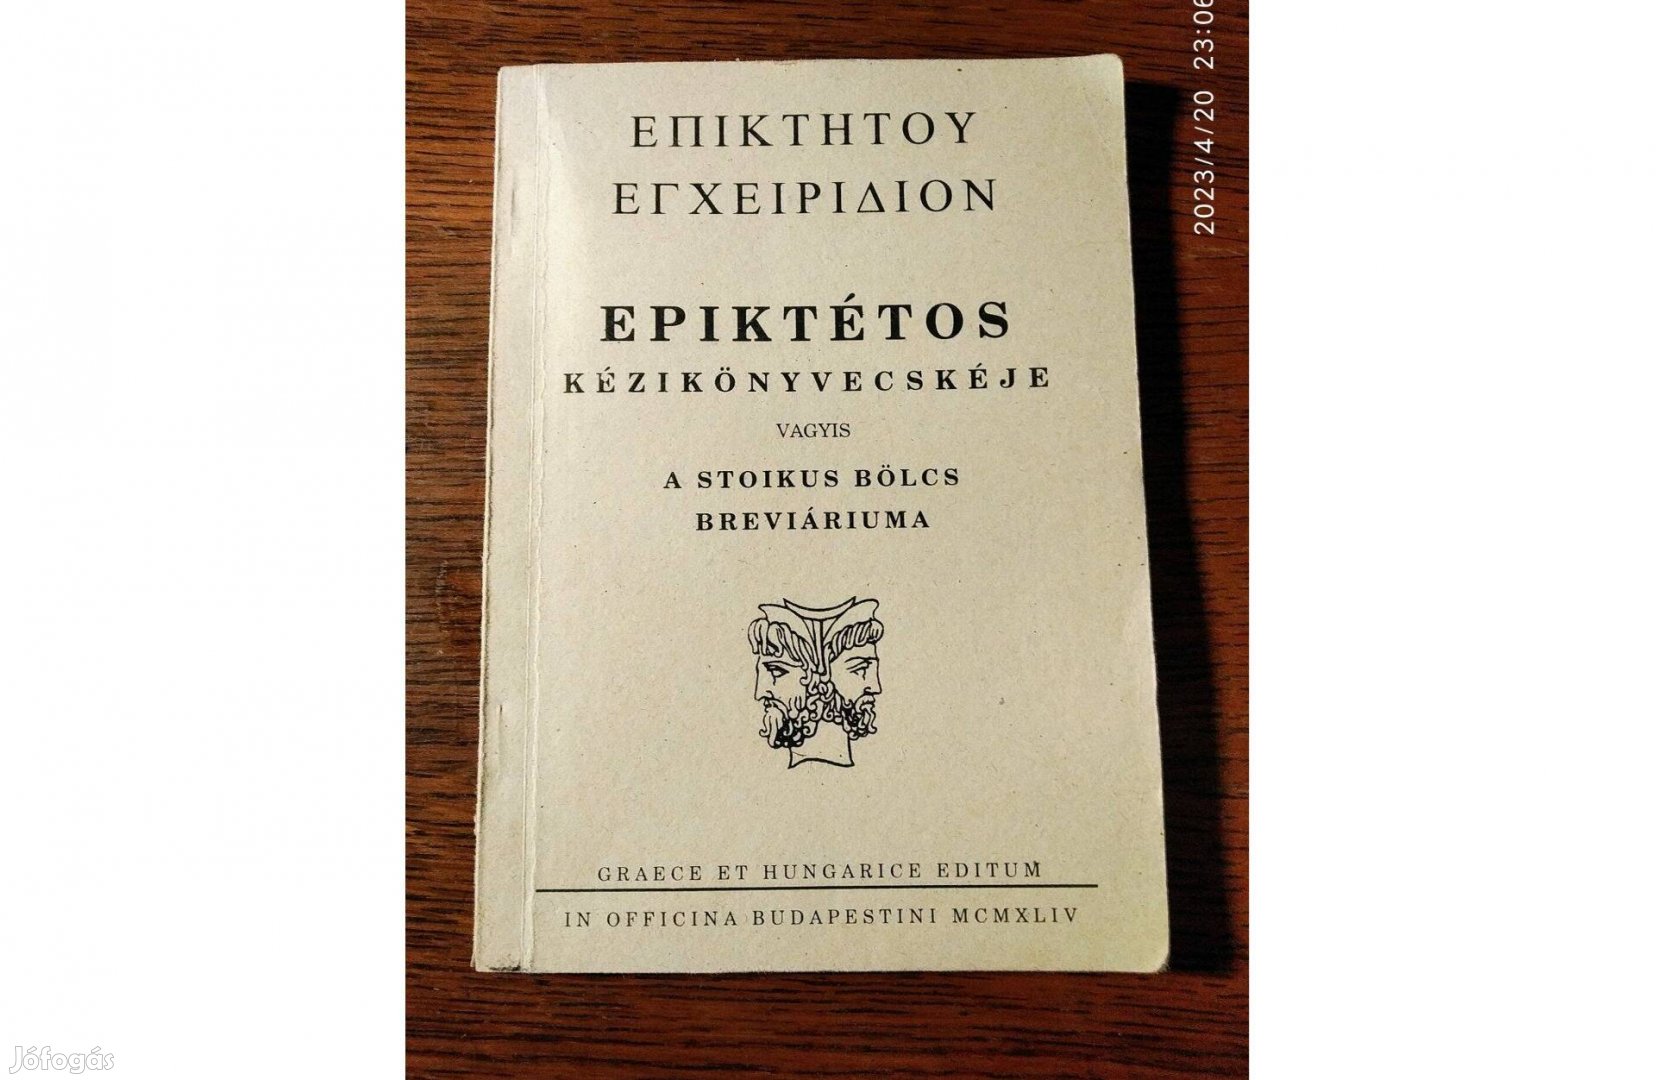 Epiktétos kézi könyvecskéje vagyis a stoikus bölcs breviárium